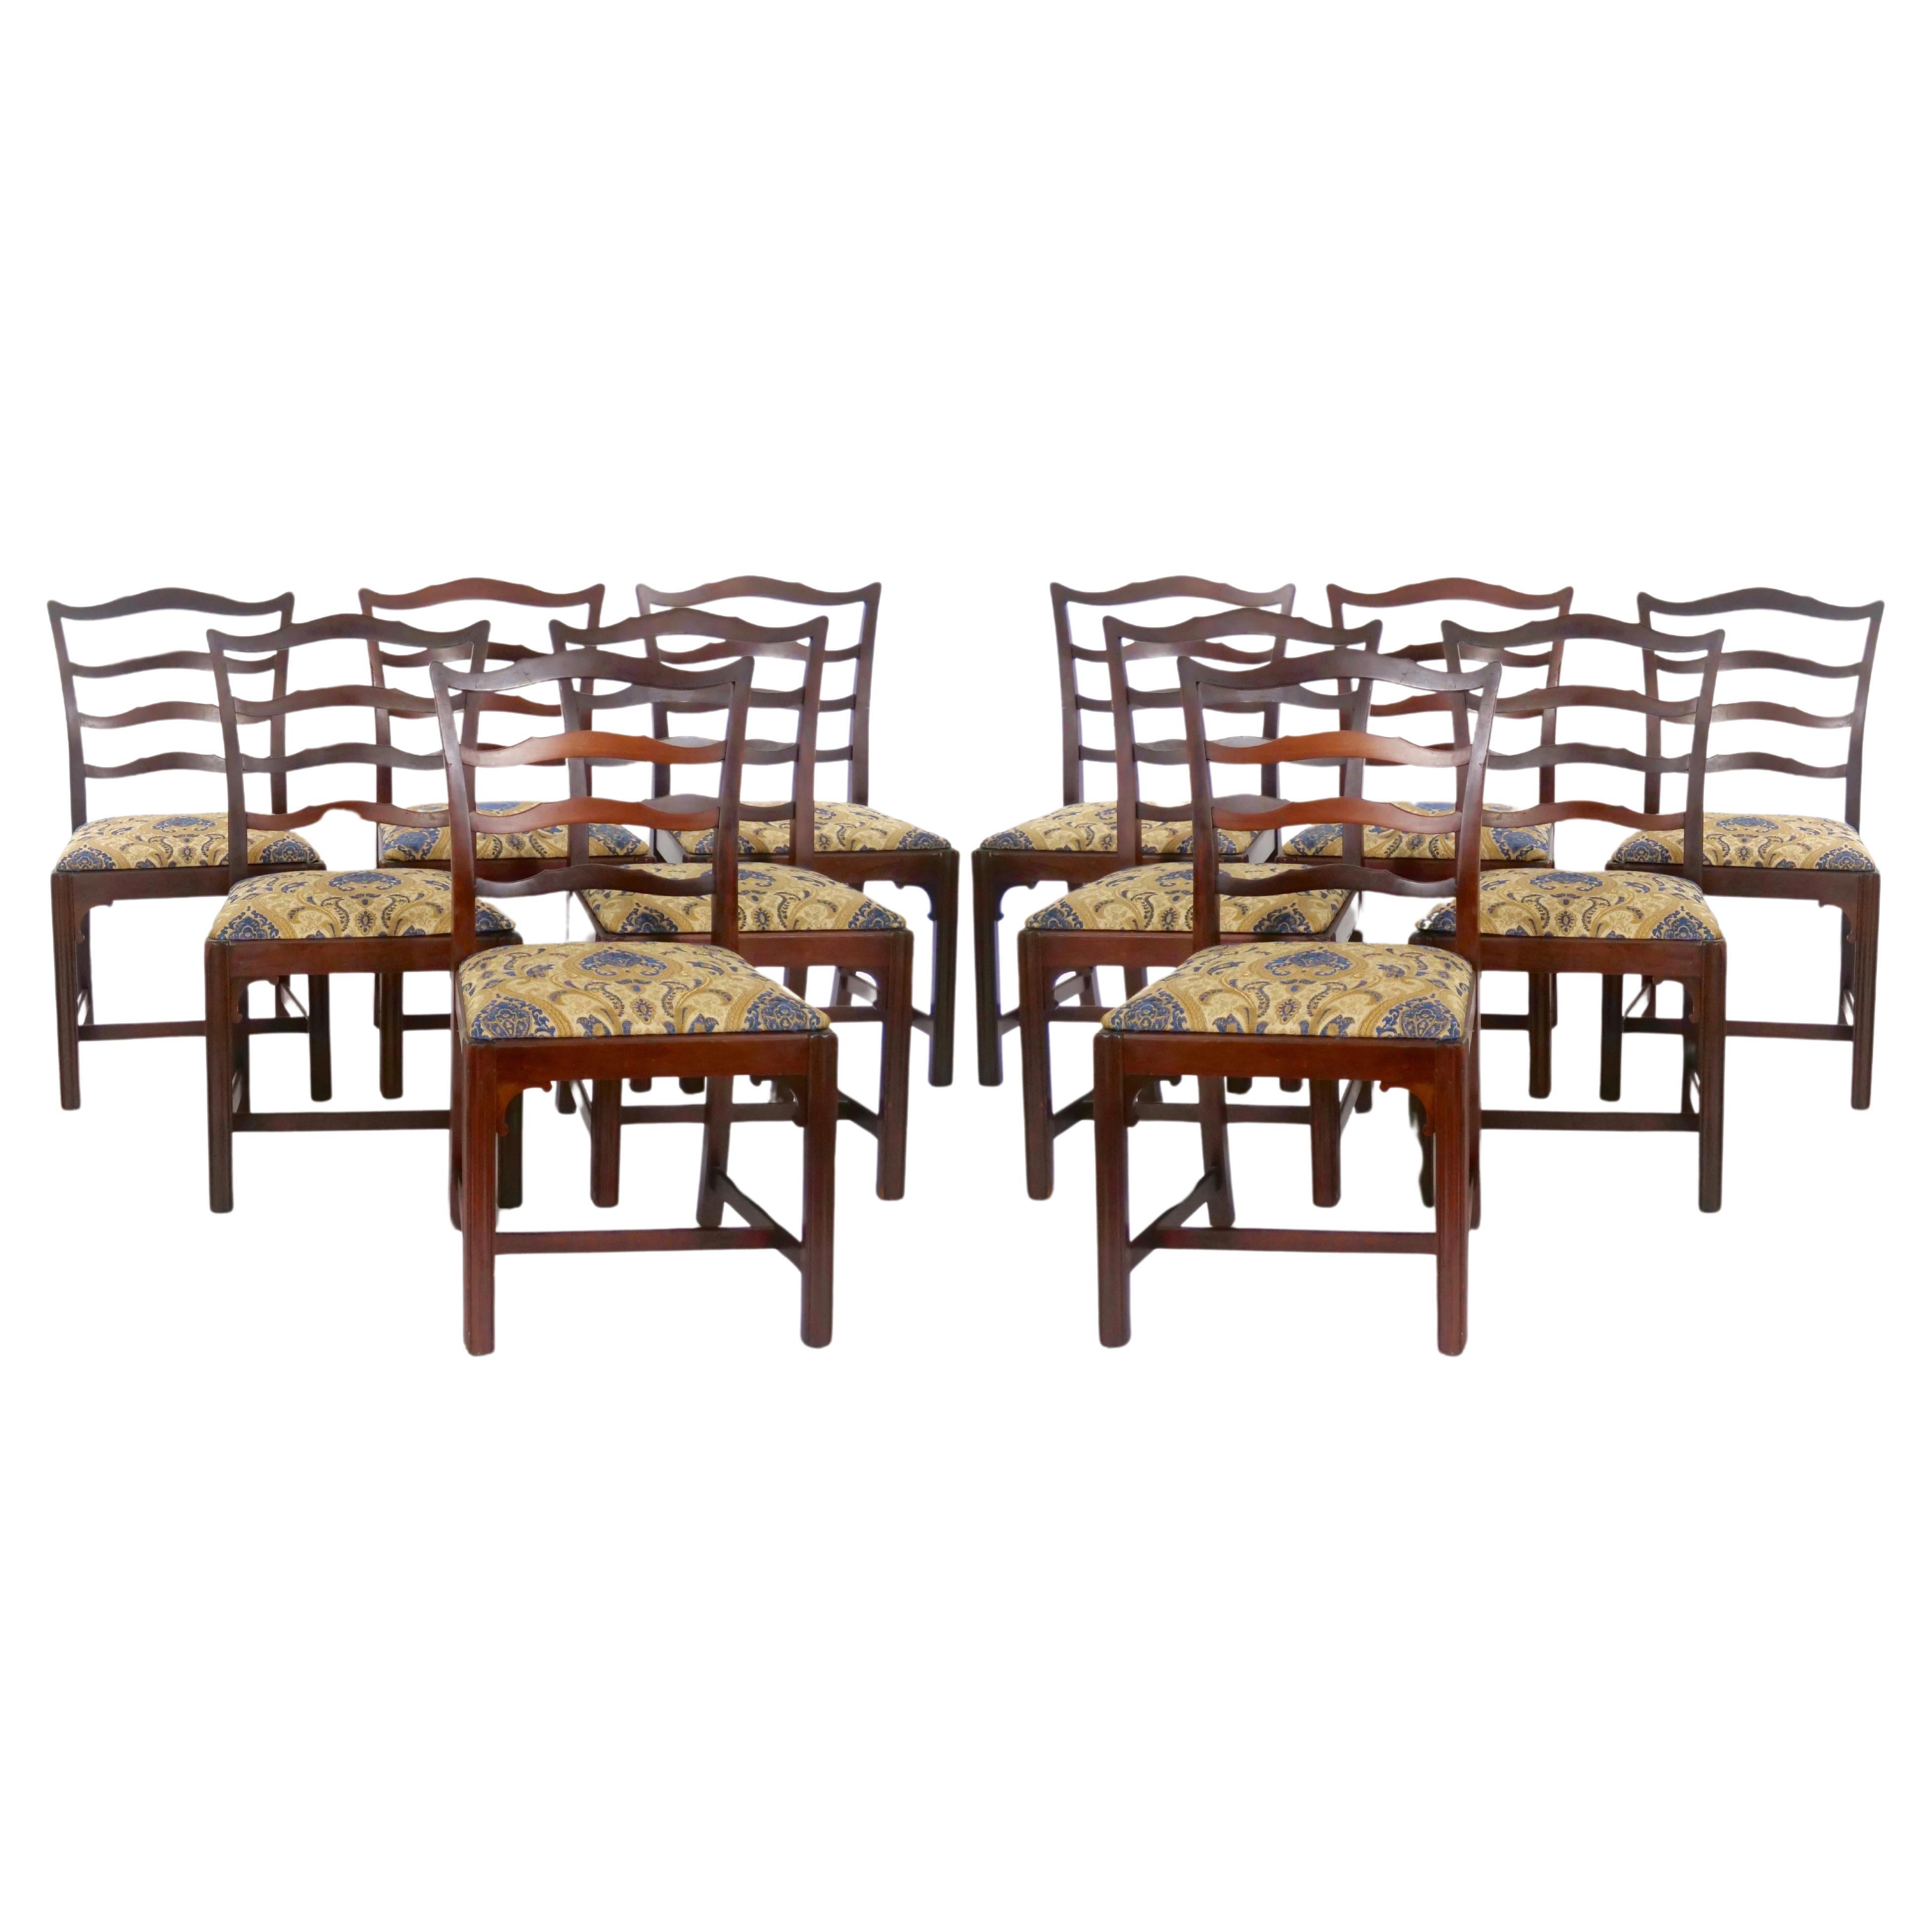 Introduisez une élégance intemporelle dans votre salle à manger avec notre ensemble exquis de 12 chaises de salle à manger anciennes de style Chippendale à dossier en ruban, fabriquées vers 1928. Chaque chaise témoigne de l'attrait durable du design